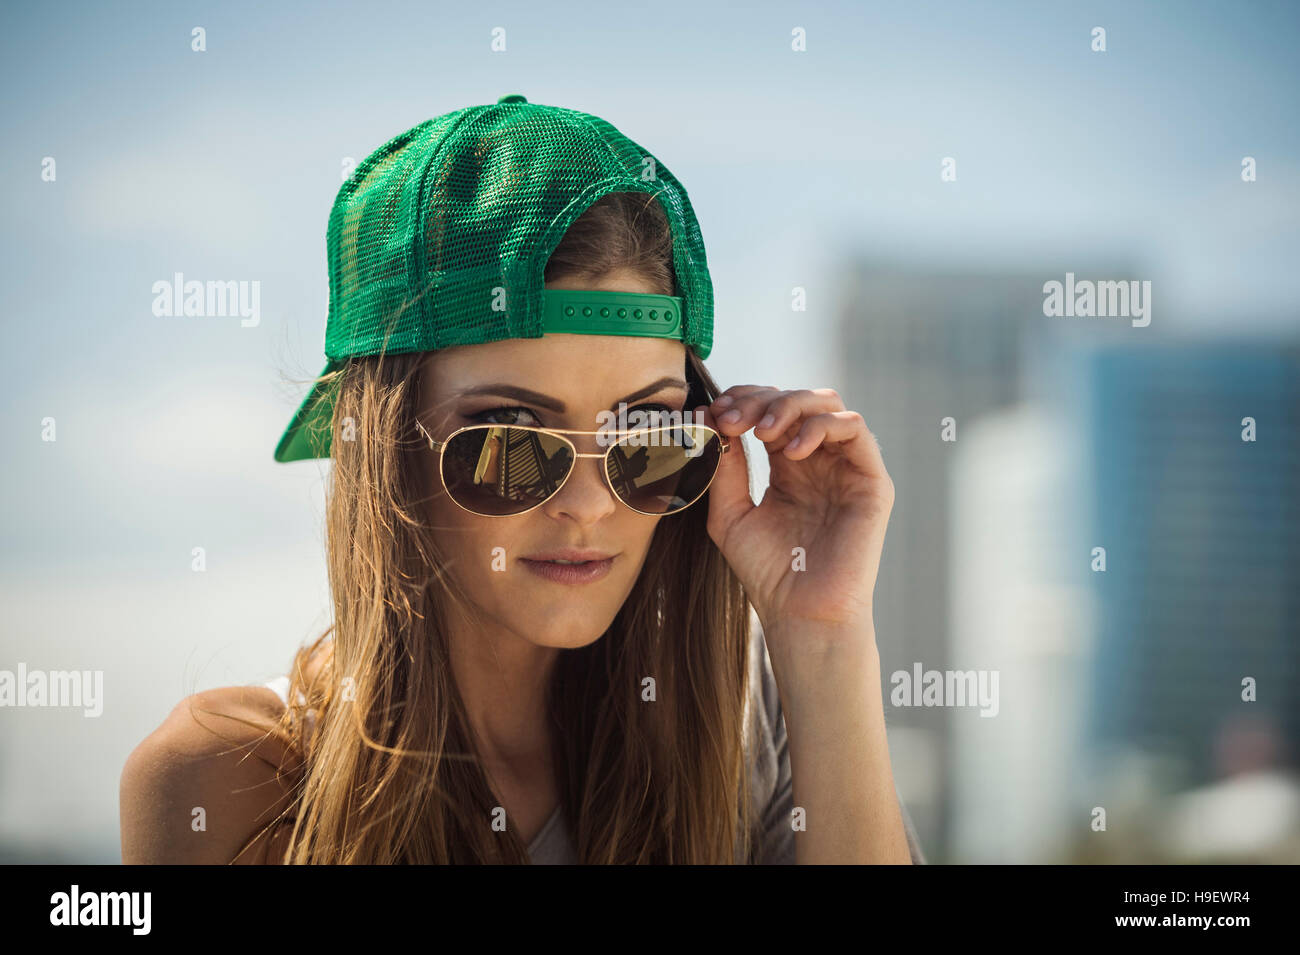 Caucasian woman wearing baseball cap peering over sunglasses Stock Photo